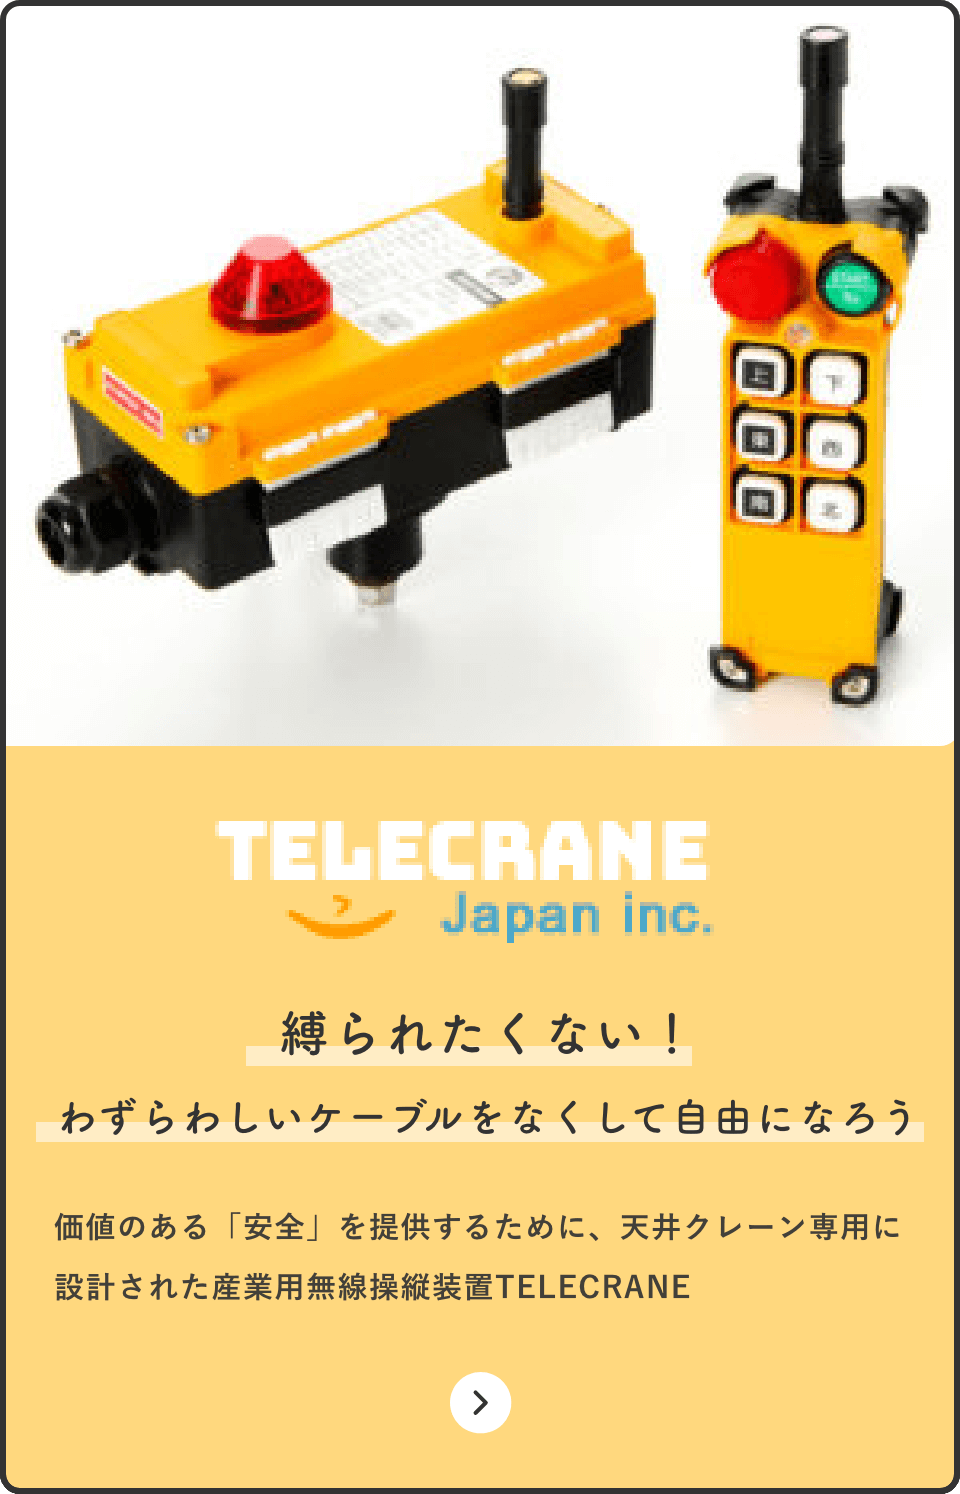 TELECRANE Japan inc. 縛られたくない！ わずらわしいケーブルをなくして自由になろう 価値のある「安全」を提供するために、天井クレーン専用に設計された産業用無線操縦装置TELECRANE